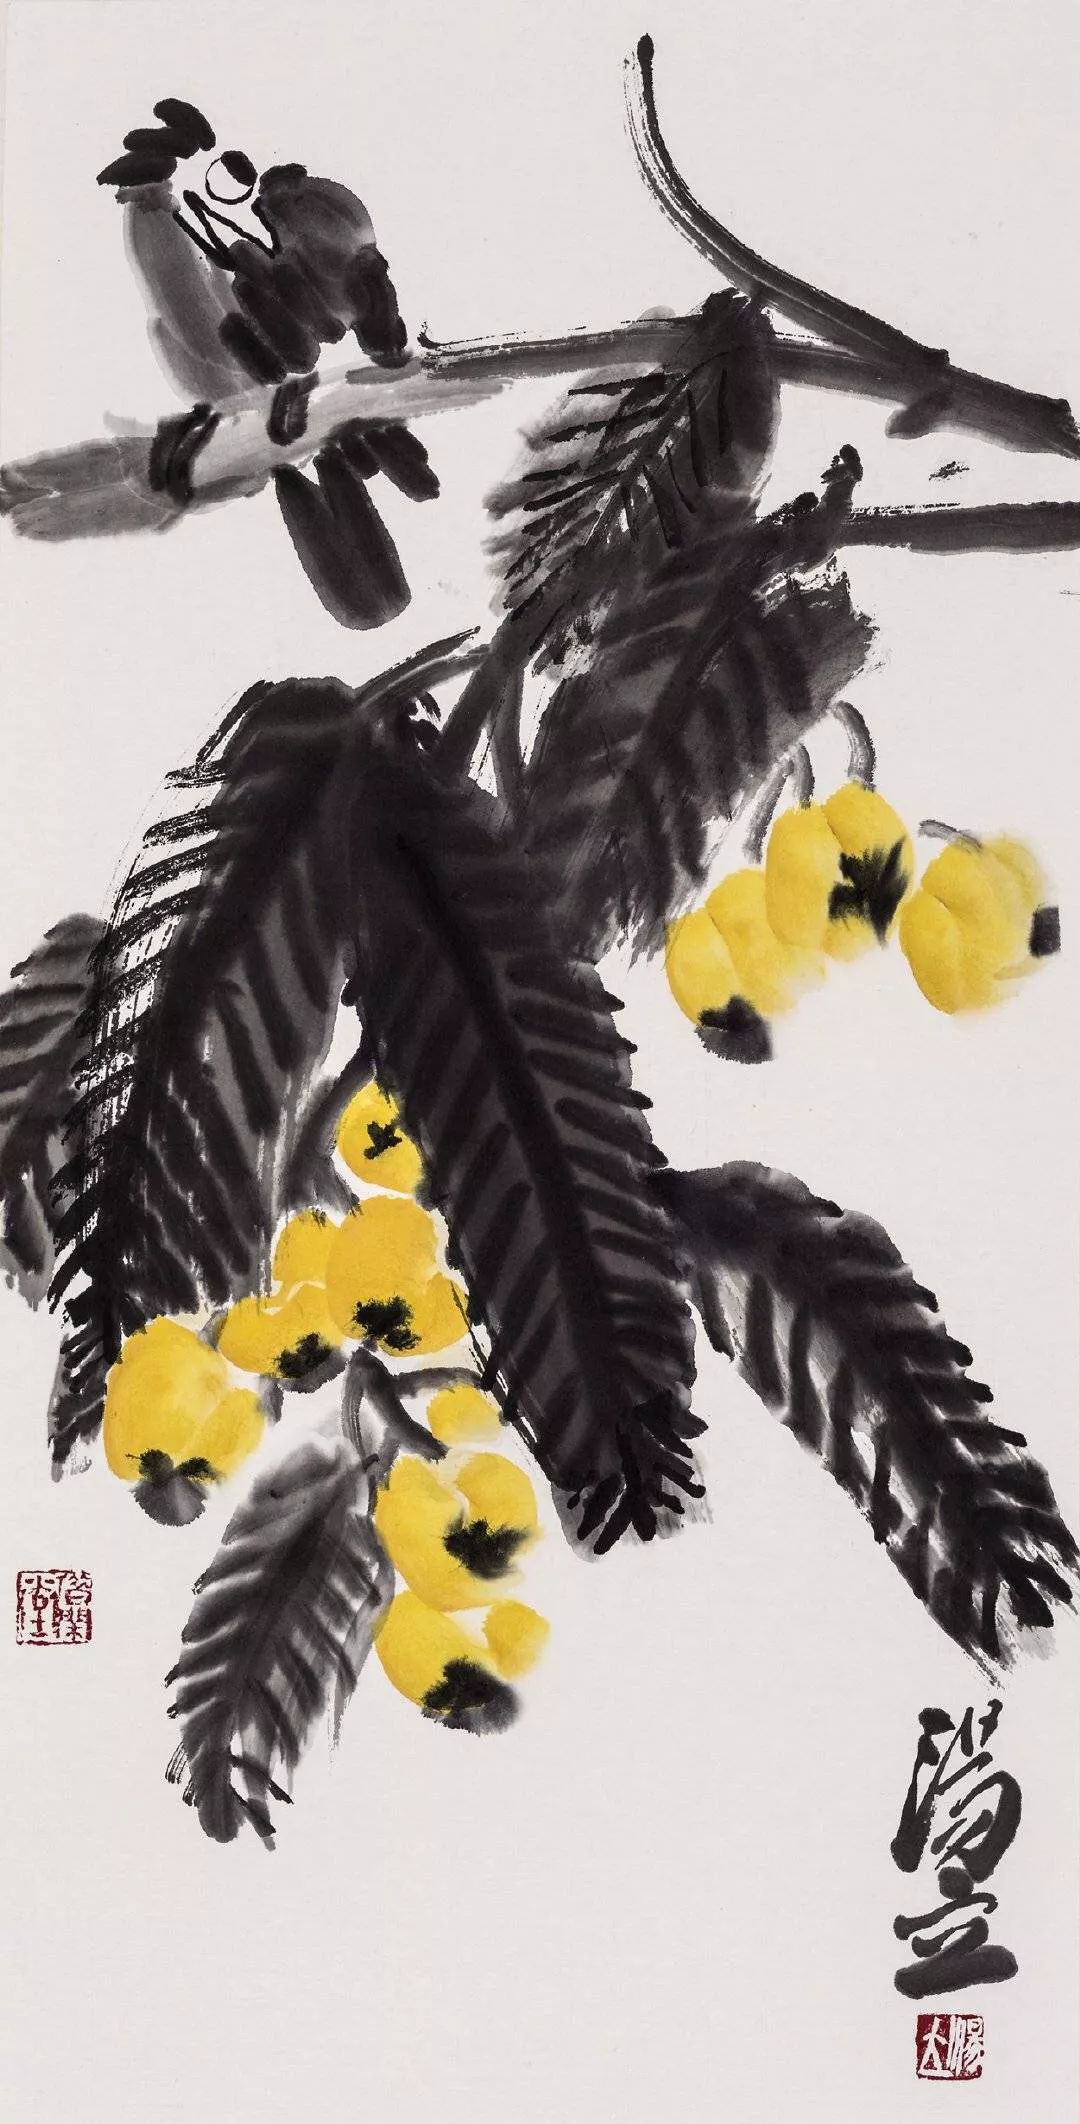 中国画花鸟大师汤立，他的作品潇洒旷逸